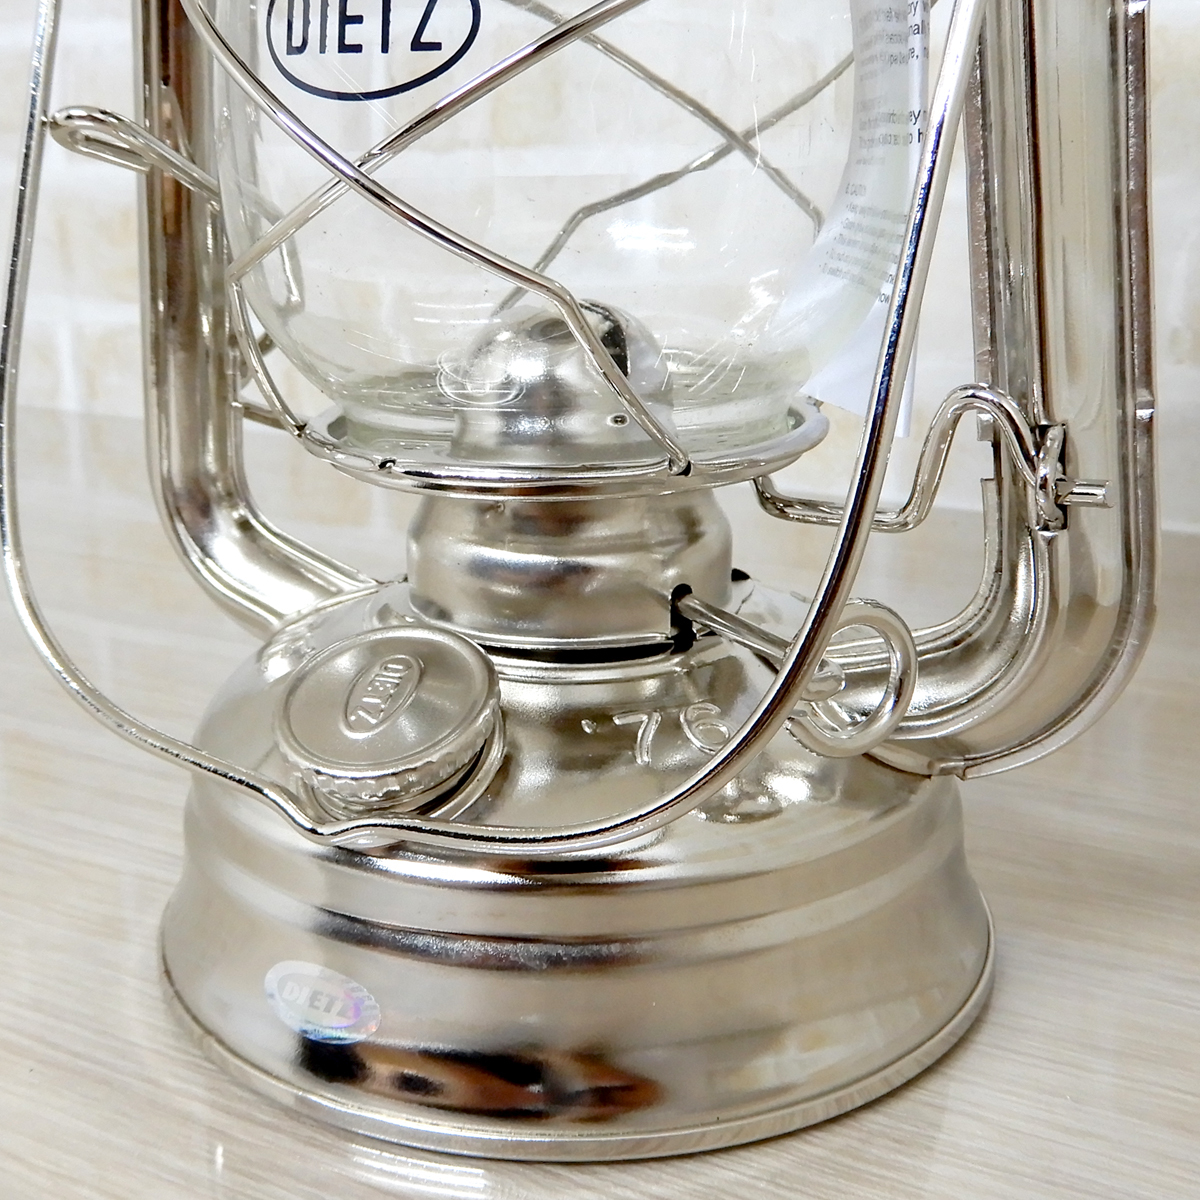 替芯2本付【送料無料】新品 Dietz #76 Original Oil Lantern - Nickel Plated 【日本未発売】◇デイツ ニッケルメッキ ハリケーンランタン